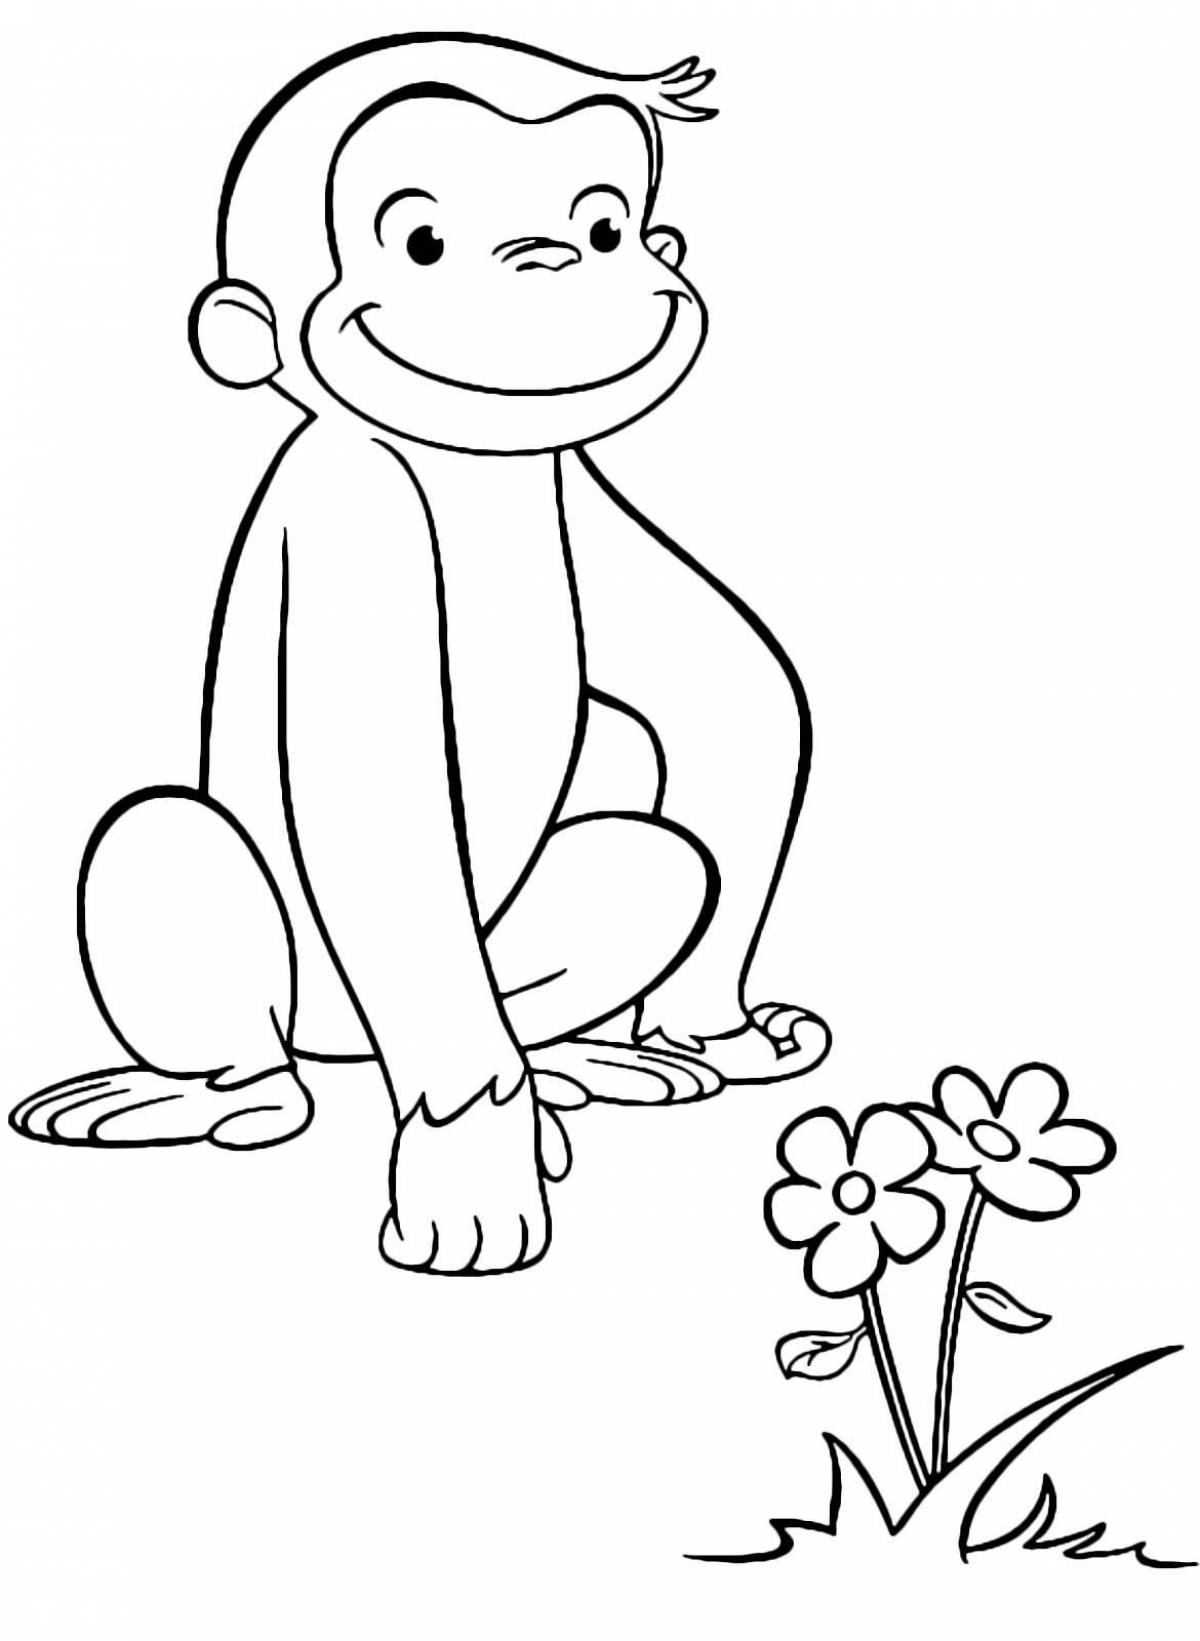 Живая раскраска обезьяна для детей